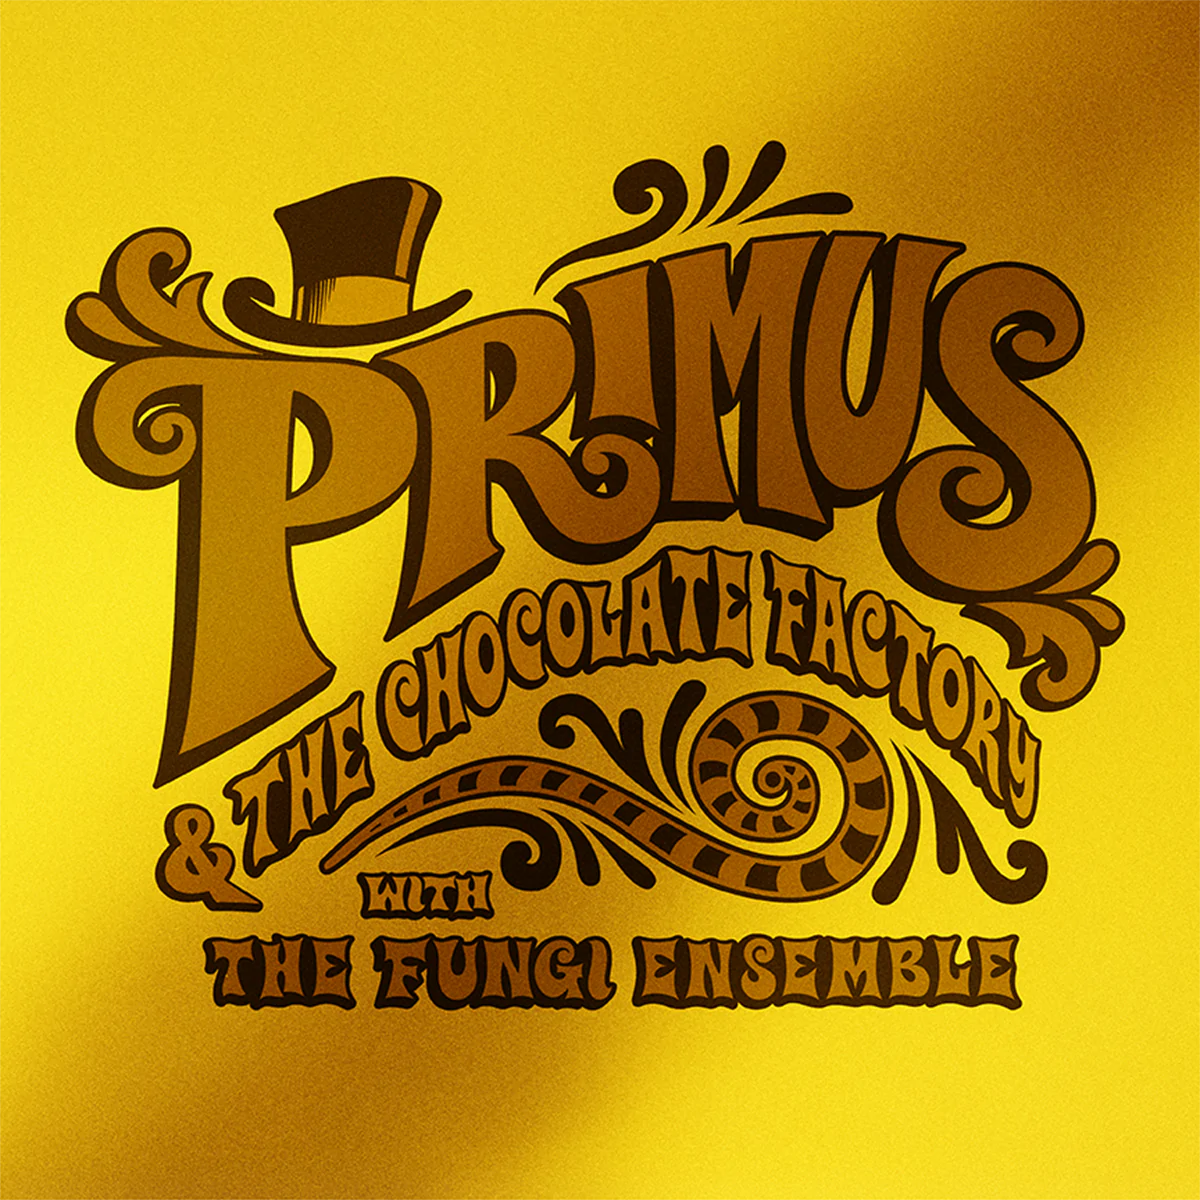 PRIMUS - PRIMUS & THE CHOCOLATE FACTORY WITH THE FUNGI ENSEMBLE Vinyl LP